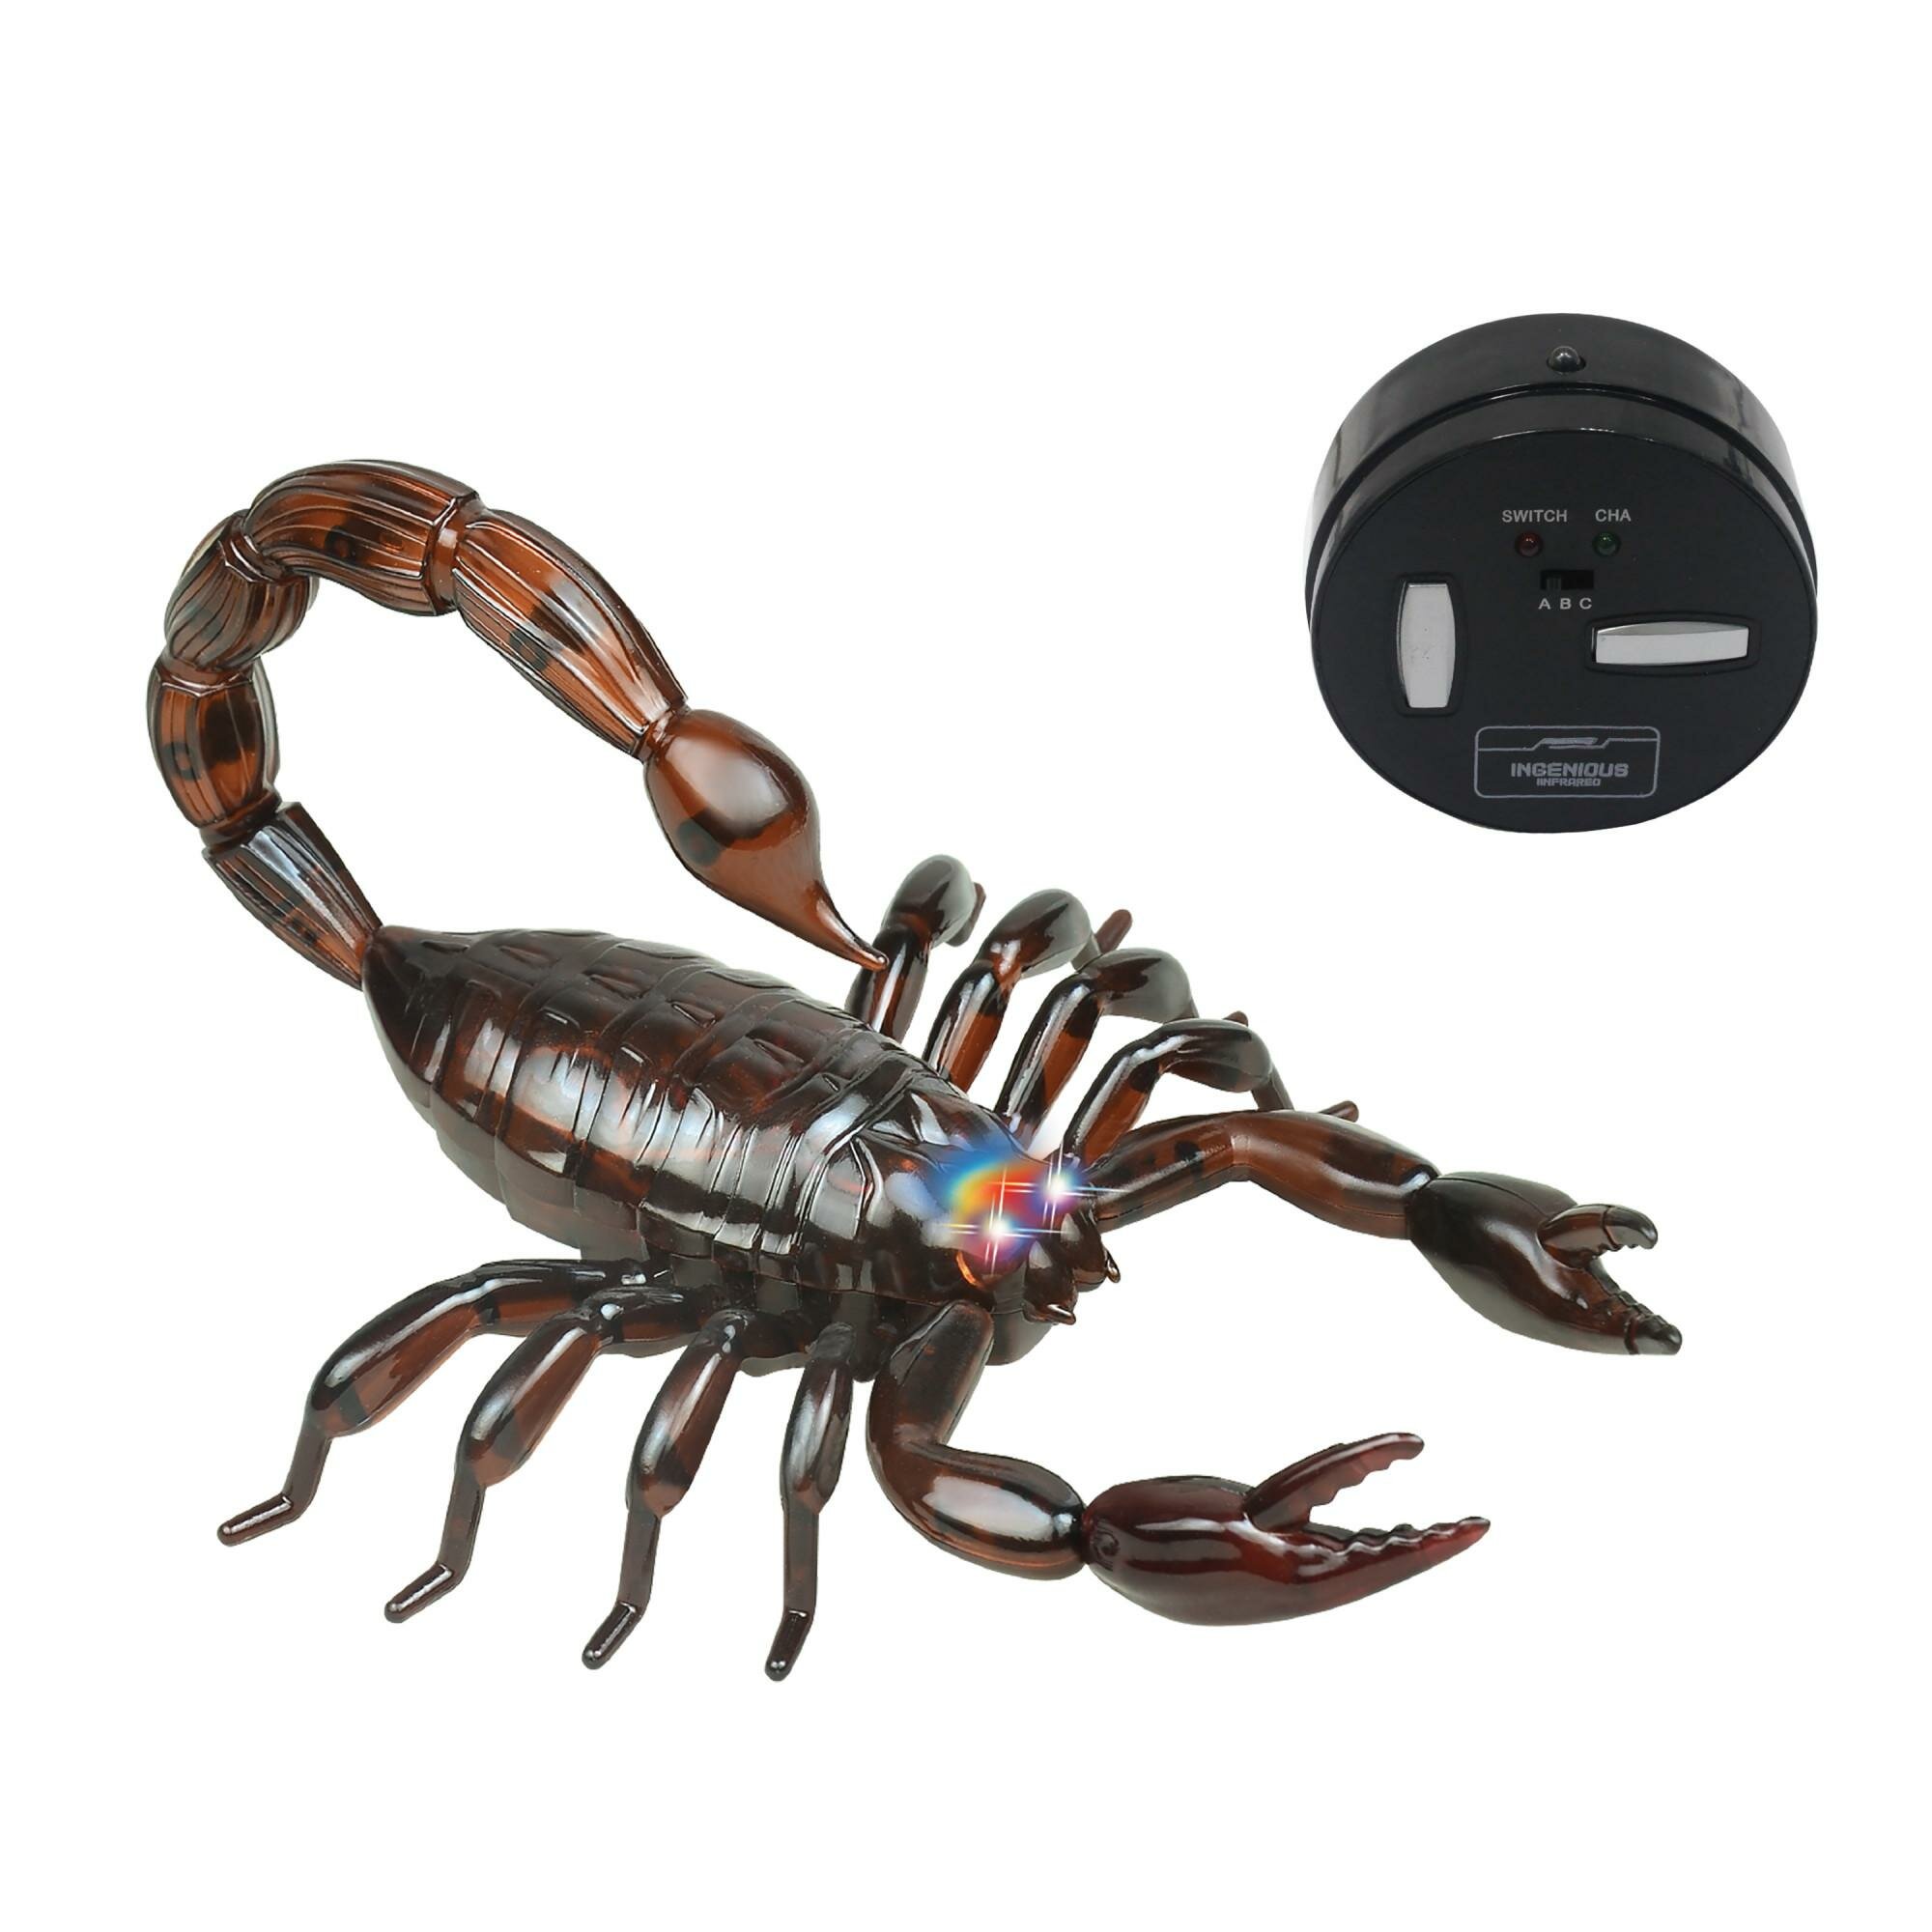 1 Toy Робо-скорпион на ИК управлении (коричневый)